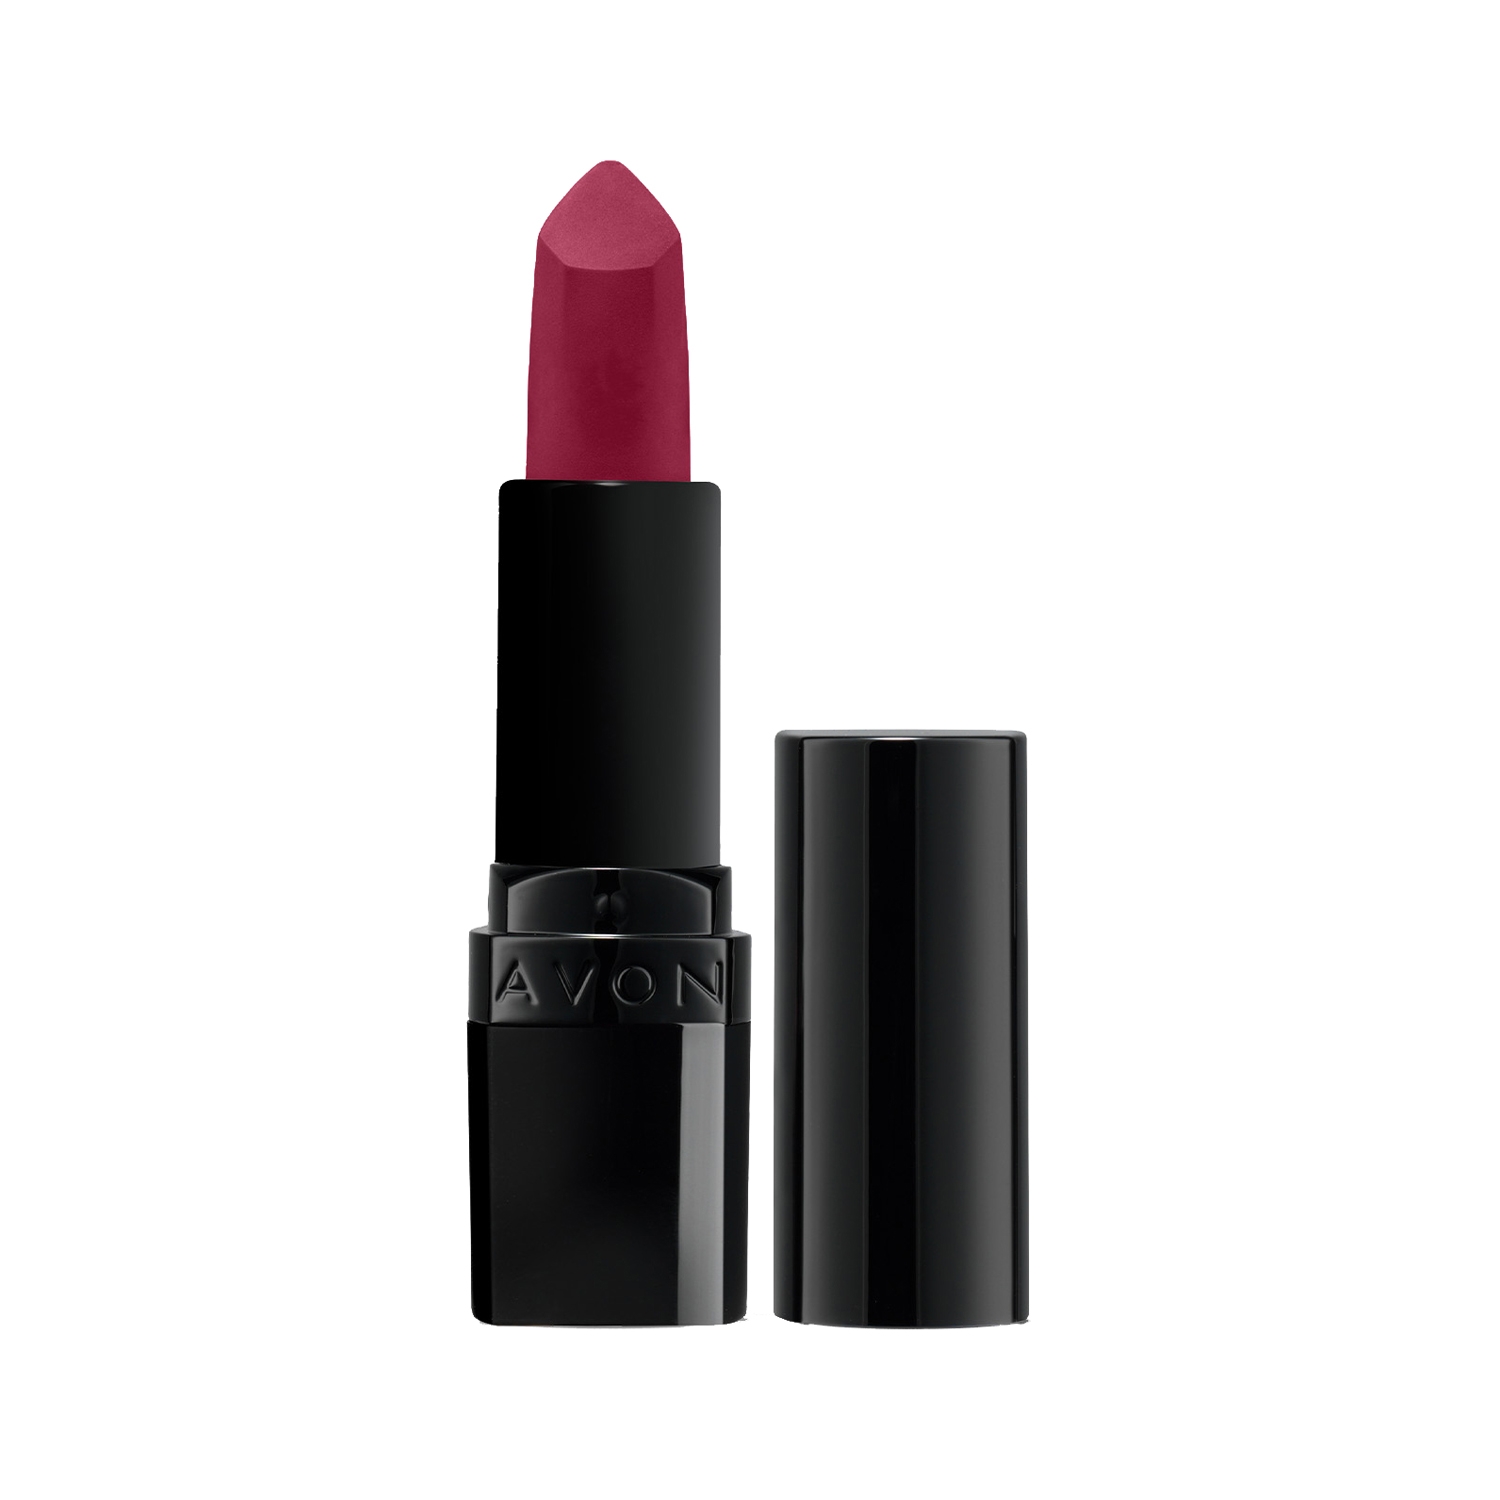 Avon | Avon Ultra Perfectly Matte Lipstick - Mauve Matters (4g)